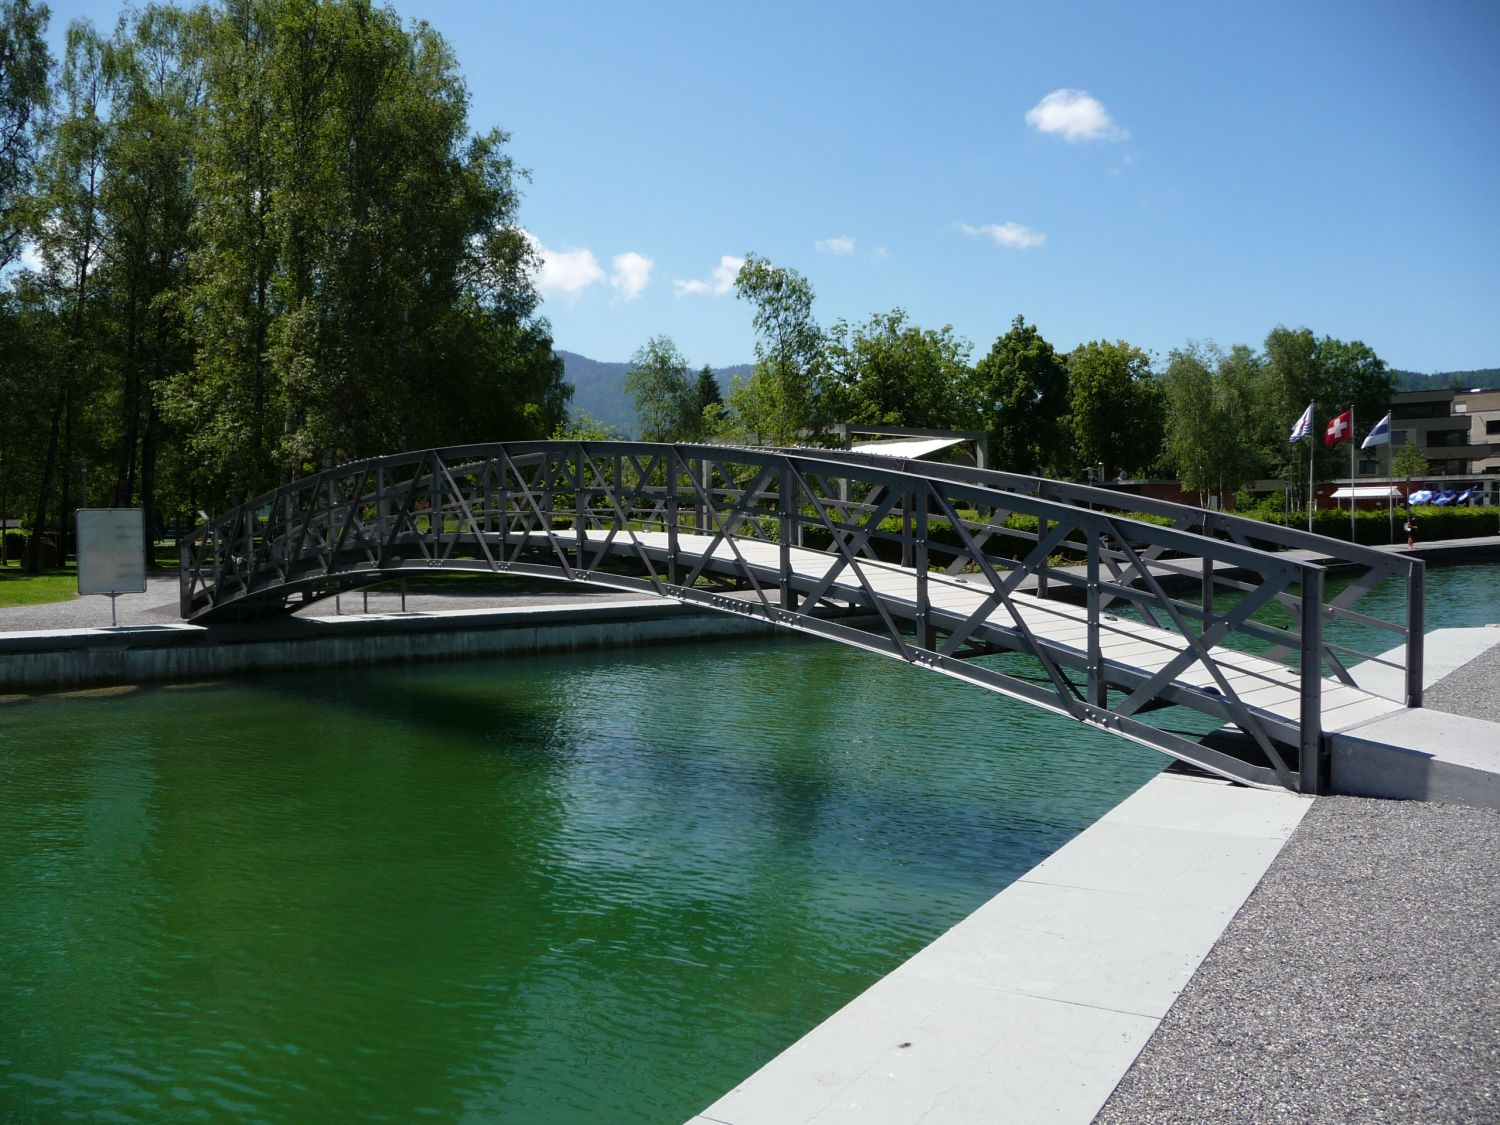 Brücke führt über Wasser